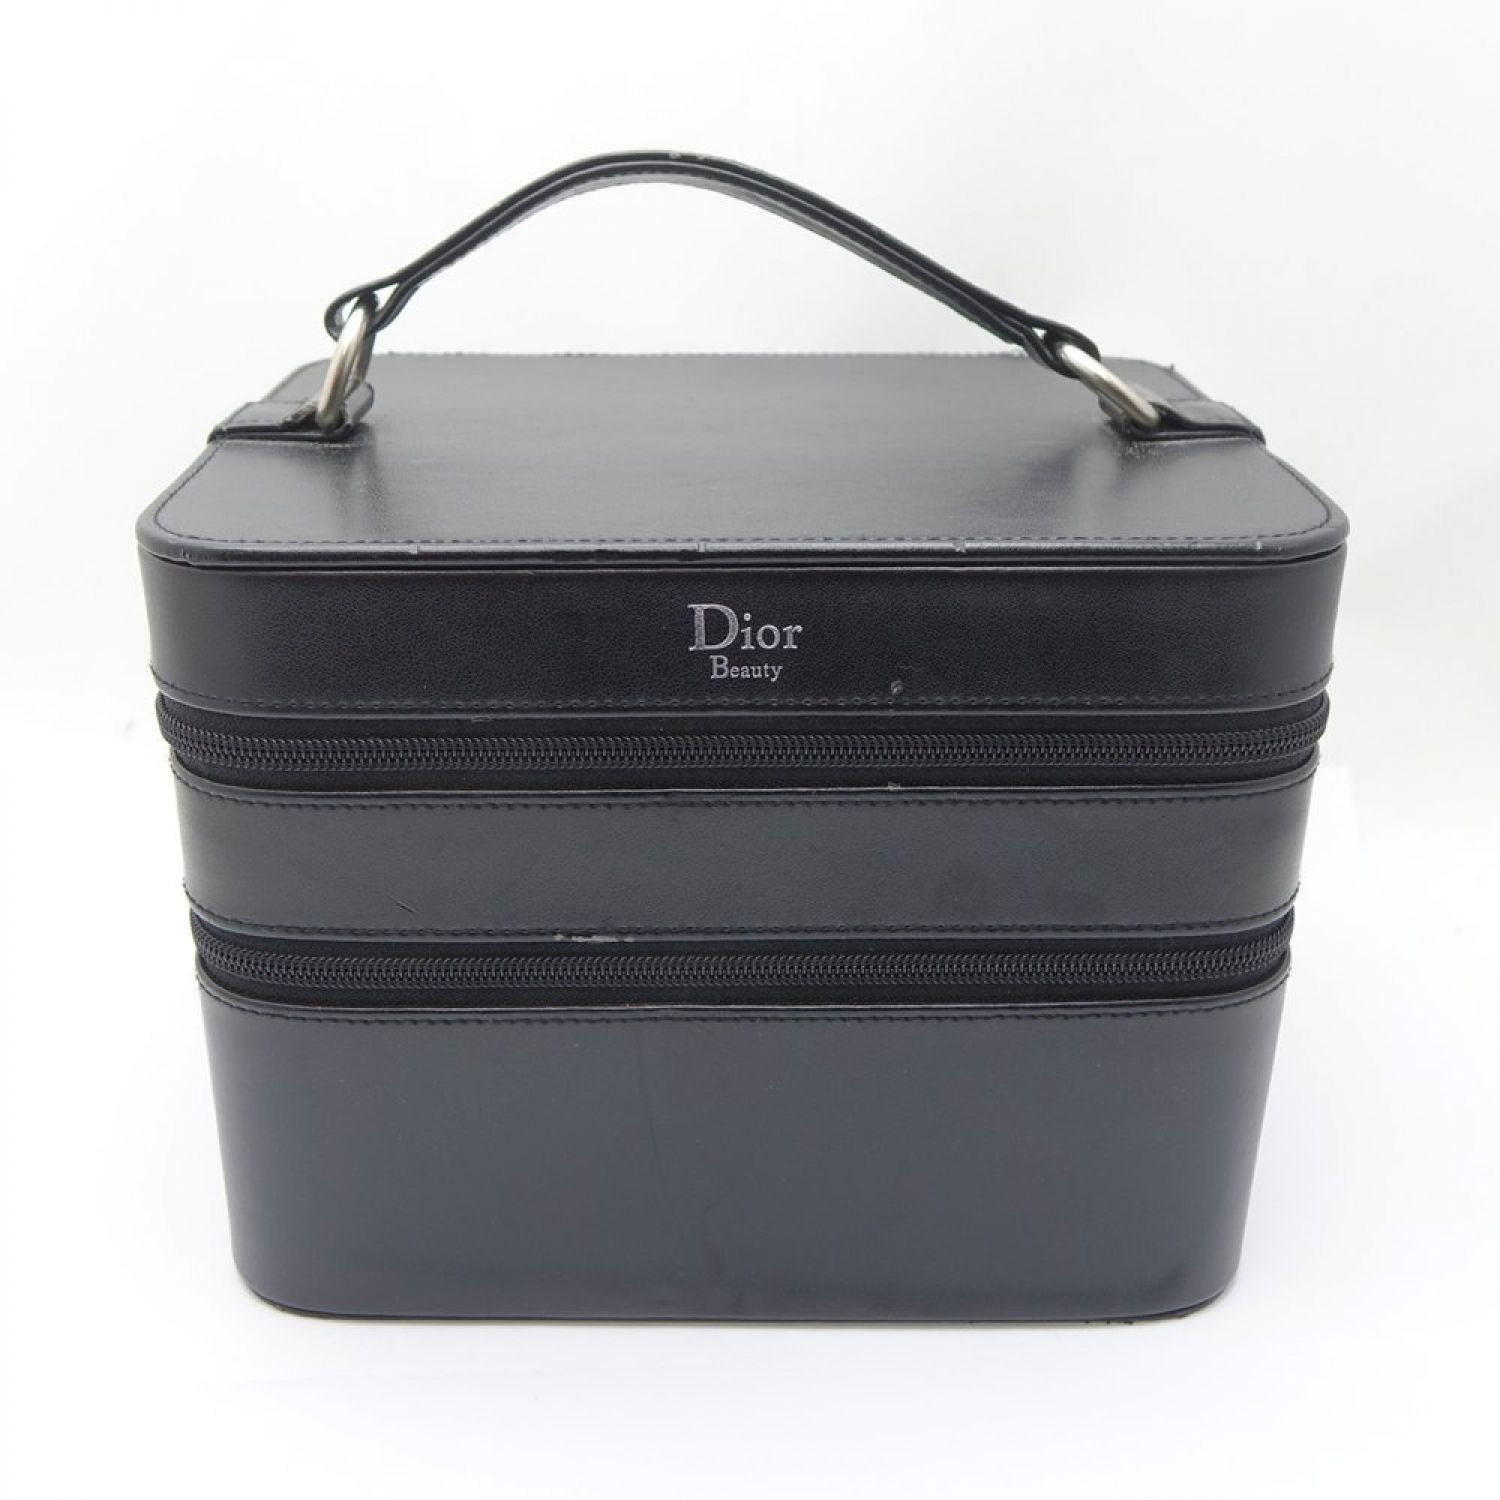 Dior Beauty メイクボックスディオールメイクボックス - メイク道具